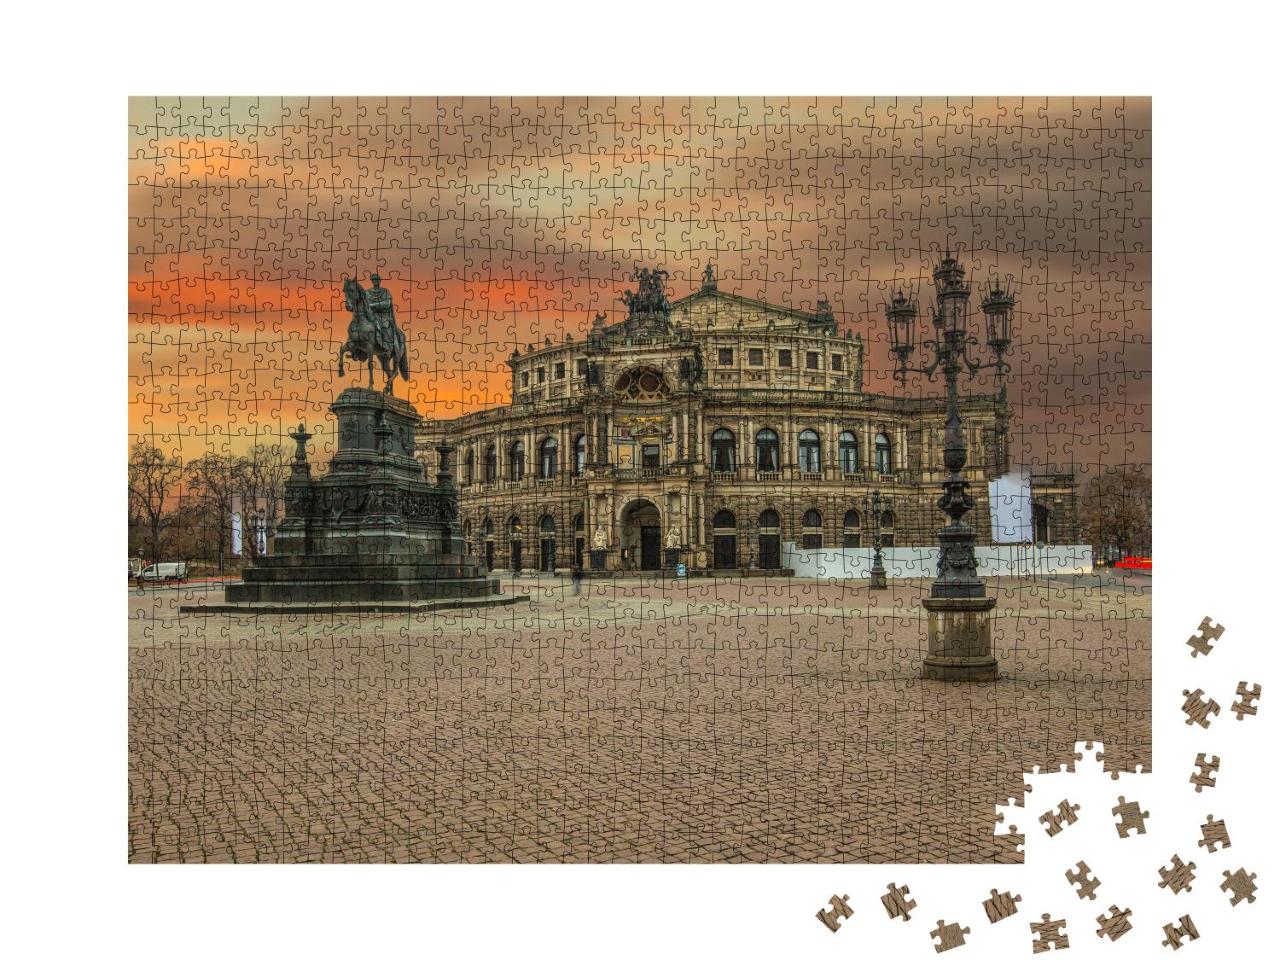 Puzzle 1000 Teile „Semperoper in Dresden, kurz nach Sonnenuntergang“